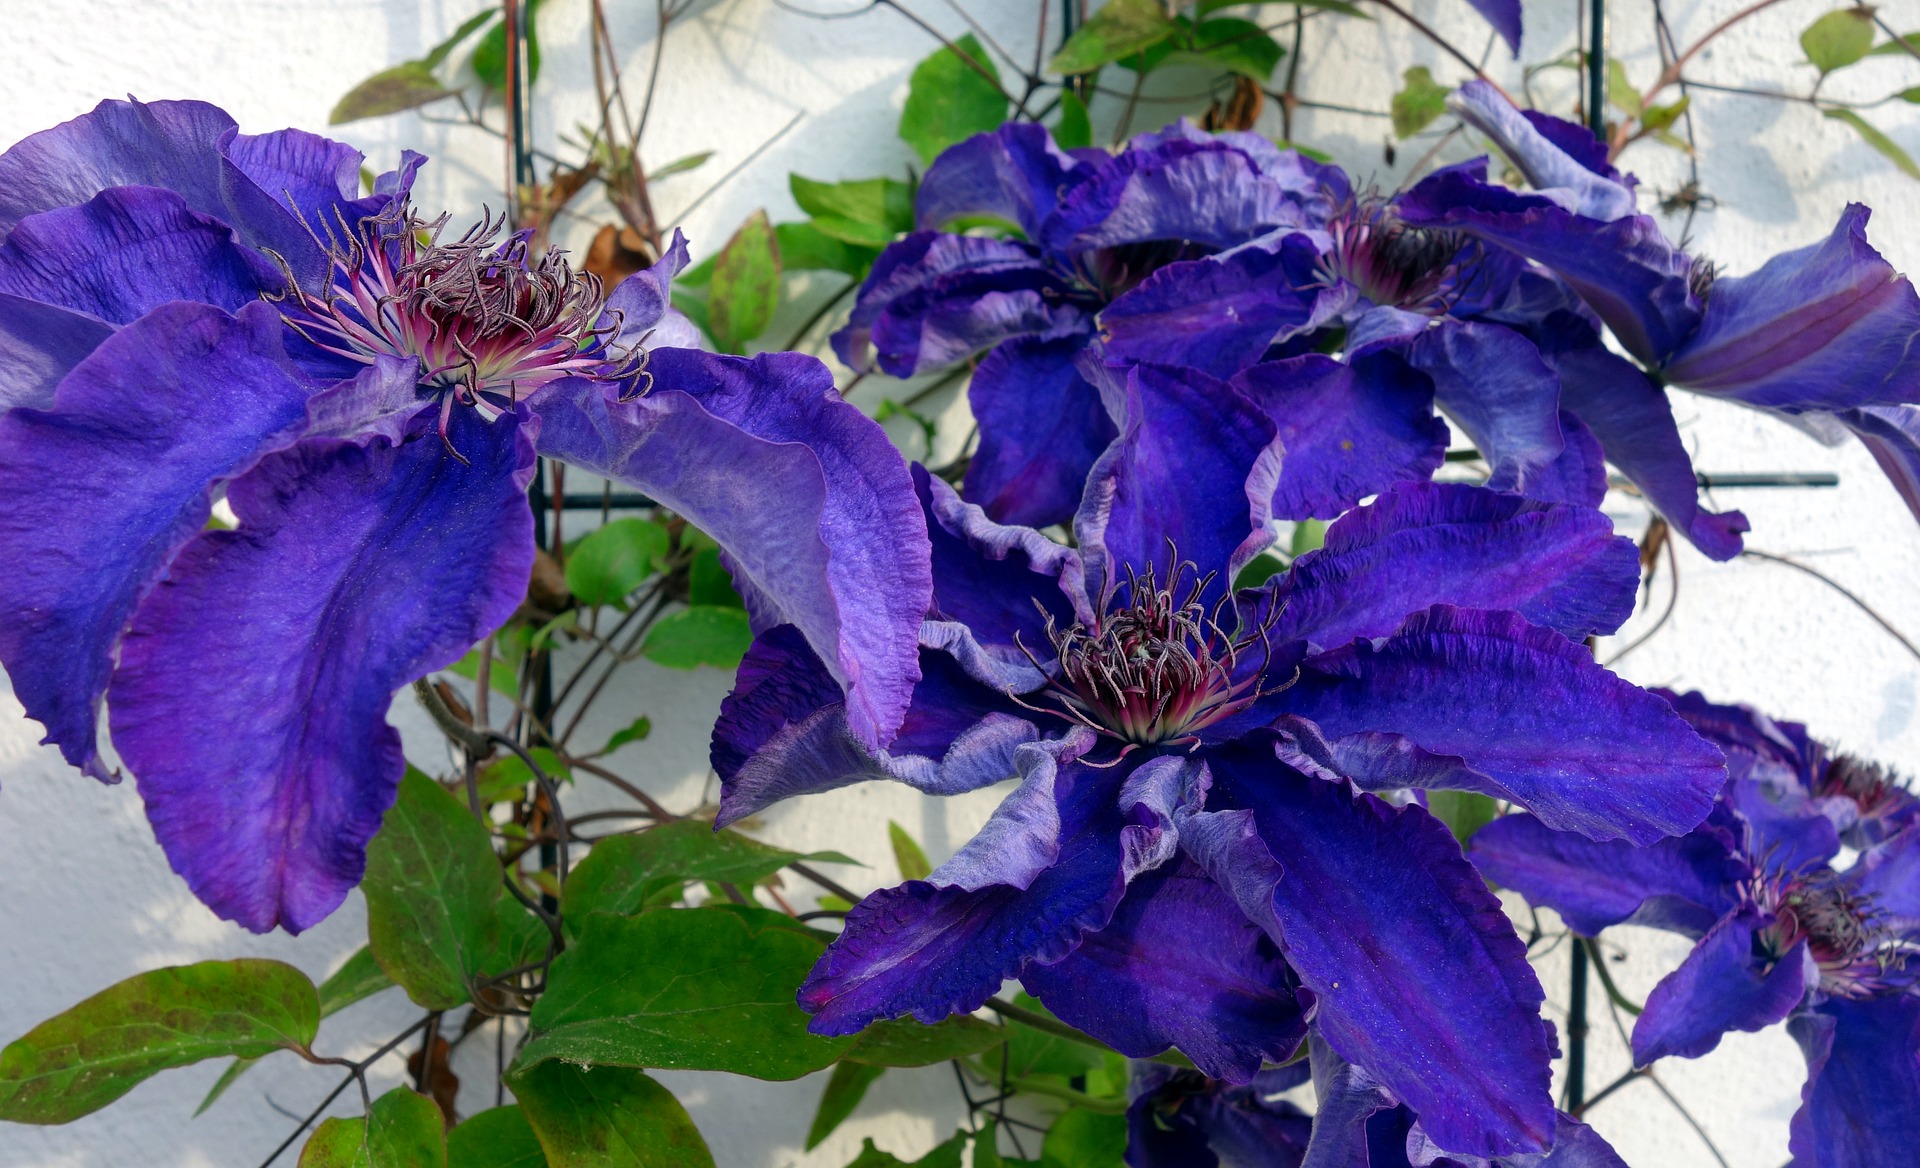 purple flowering plant - cyclamen?